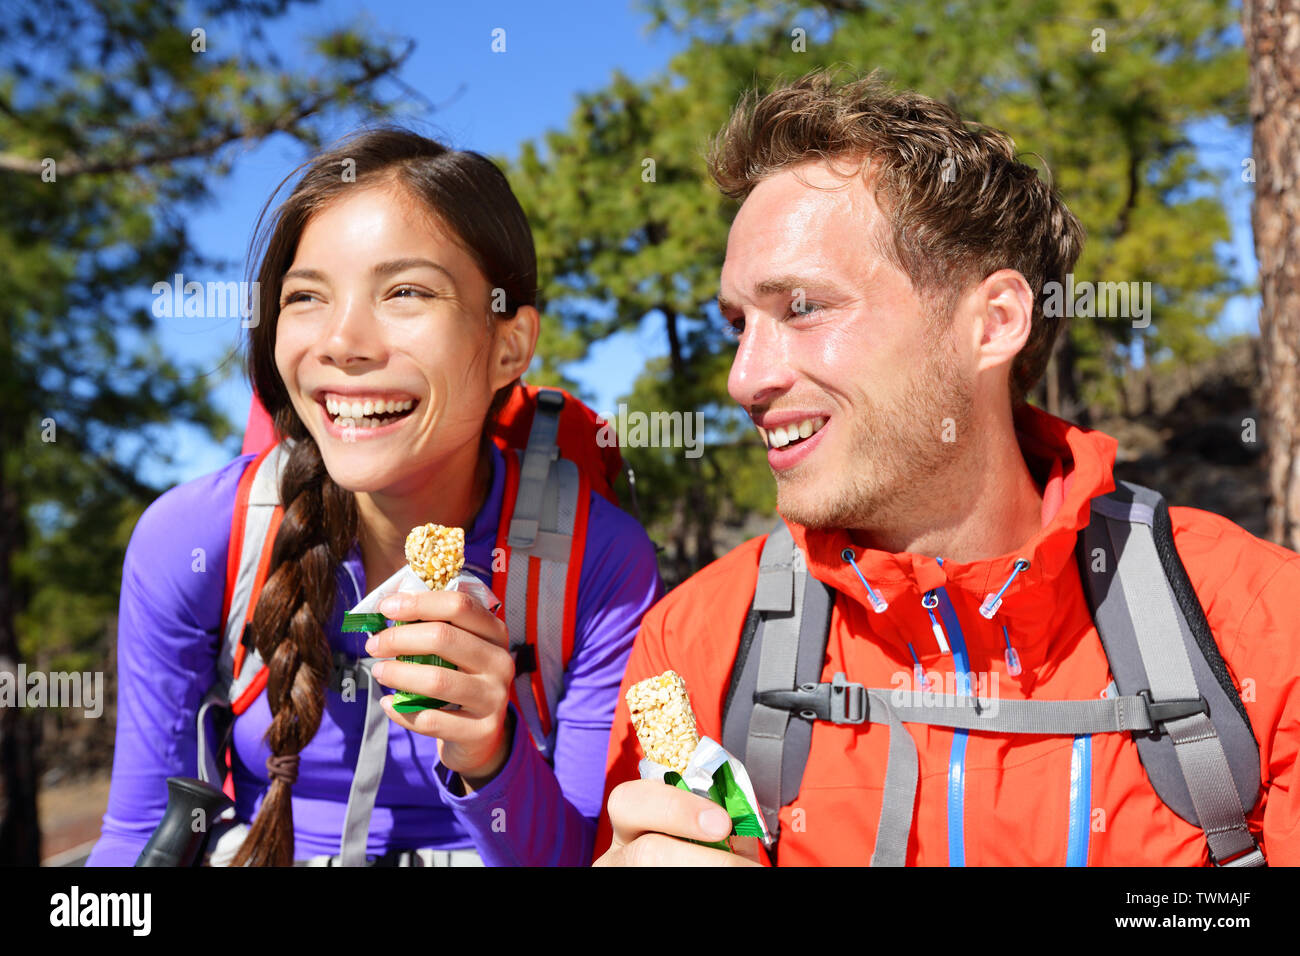 Paar essen Müsliriegel wandern. Glückliche Menschen genießen Müsli Müsliriegel, gesunden, aktiven Lebensstil in der Bergnatur. Frau und Mann Wanderer sitzen lachend während der Wanderung. Stockfoto